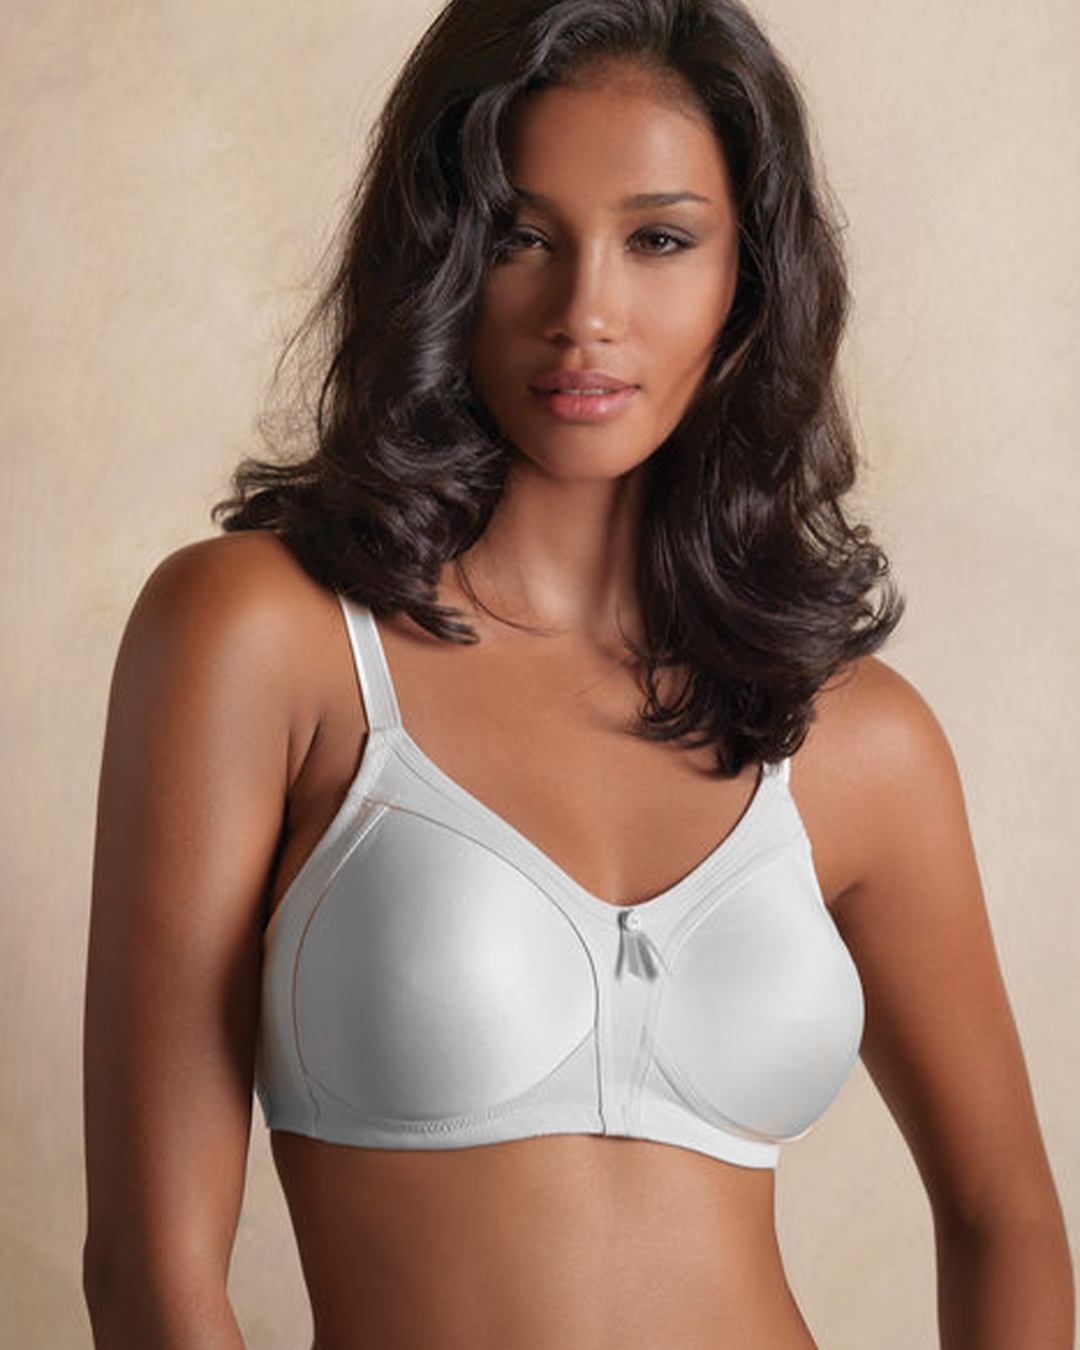 Women's soft mini-meyers cotton bra without iron